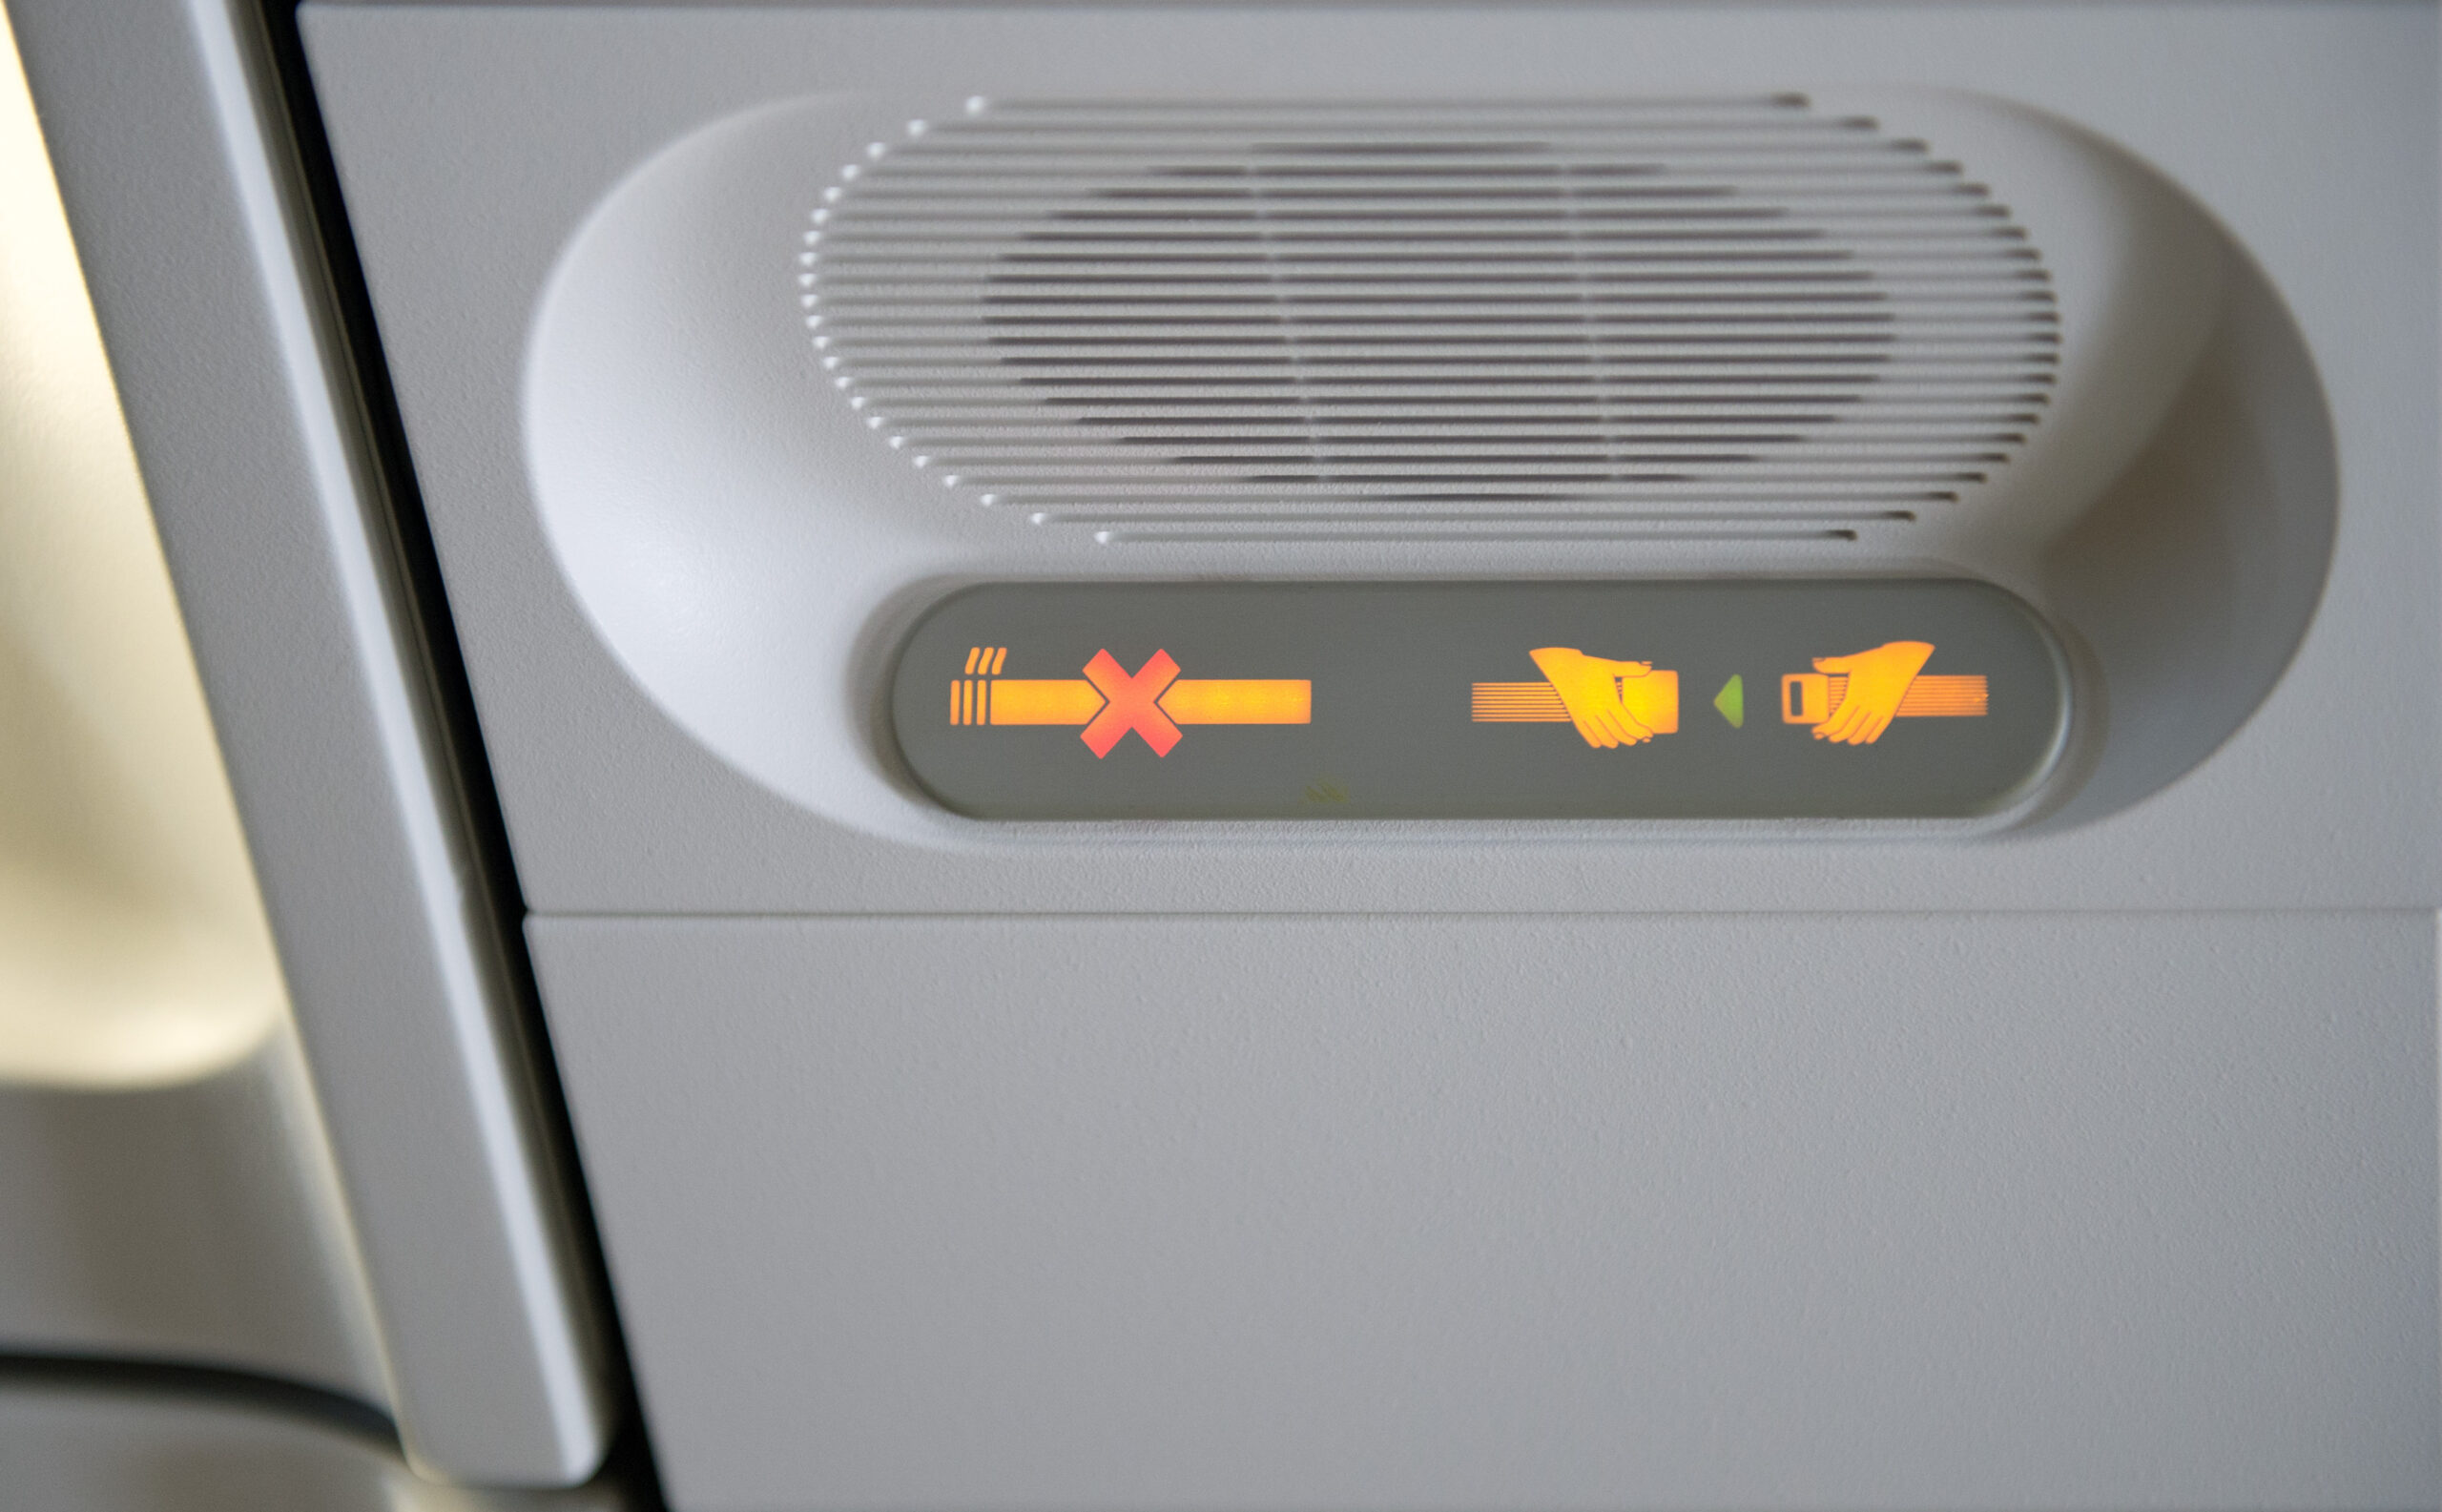 Leuchtanzeige im Flugzeug, die auf Rauchverbot und Anschnallpflicht hinweist.